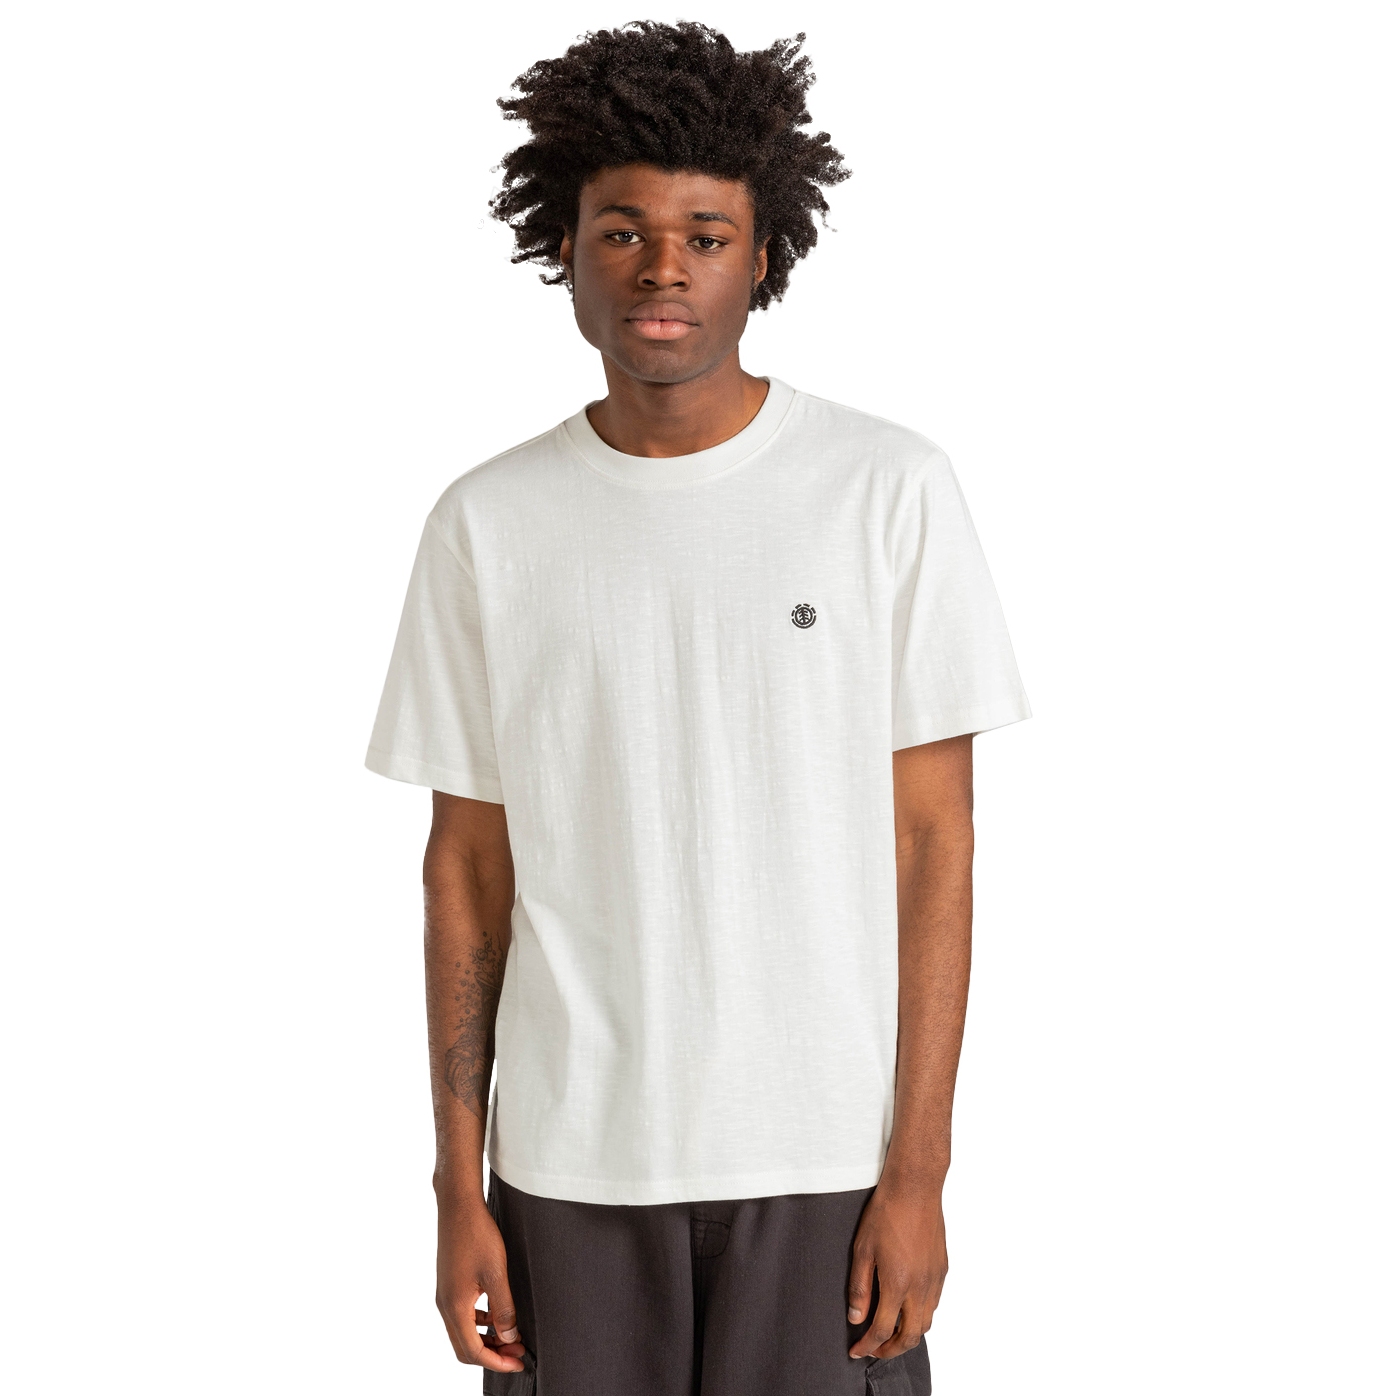 Productfoto van Element Crail T-Shirt - off white